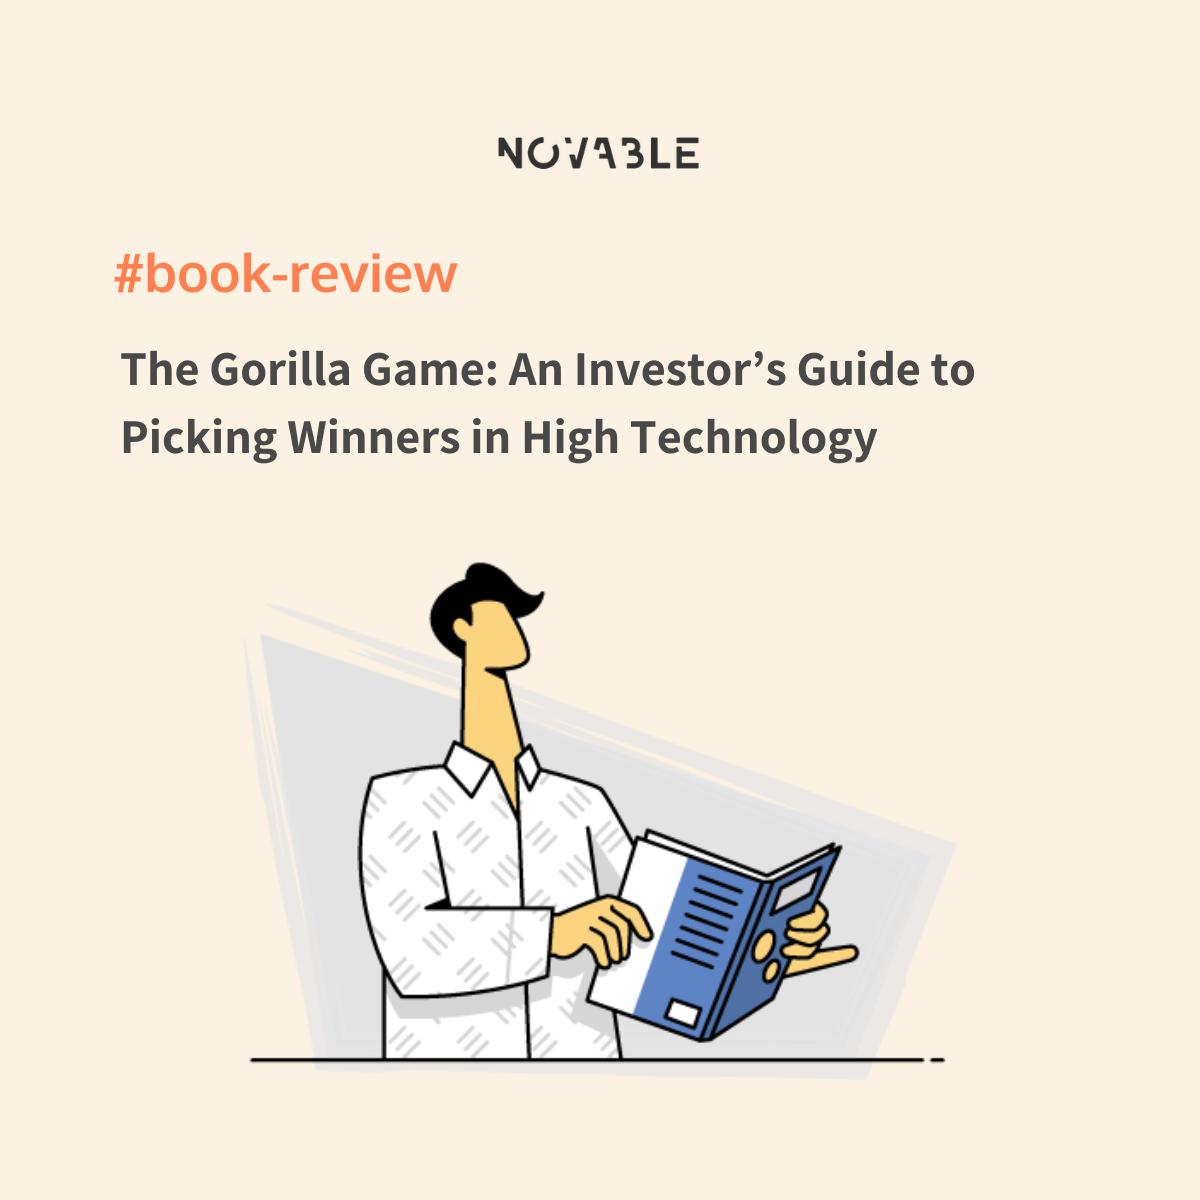 Gorilla Game book review Novable